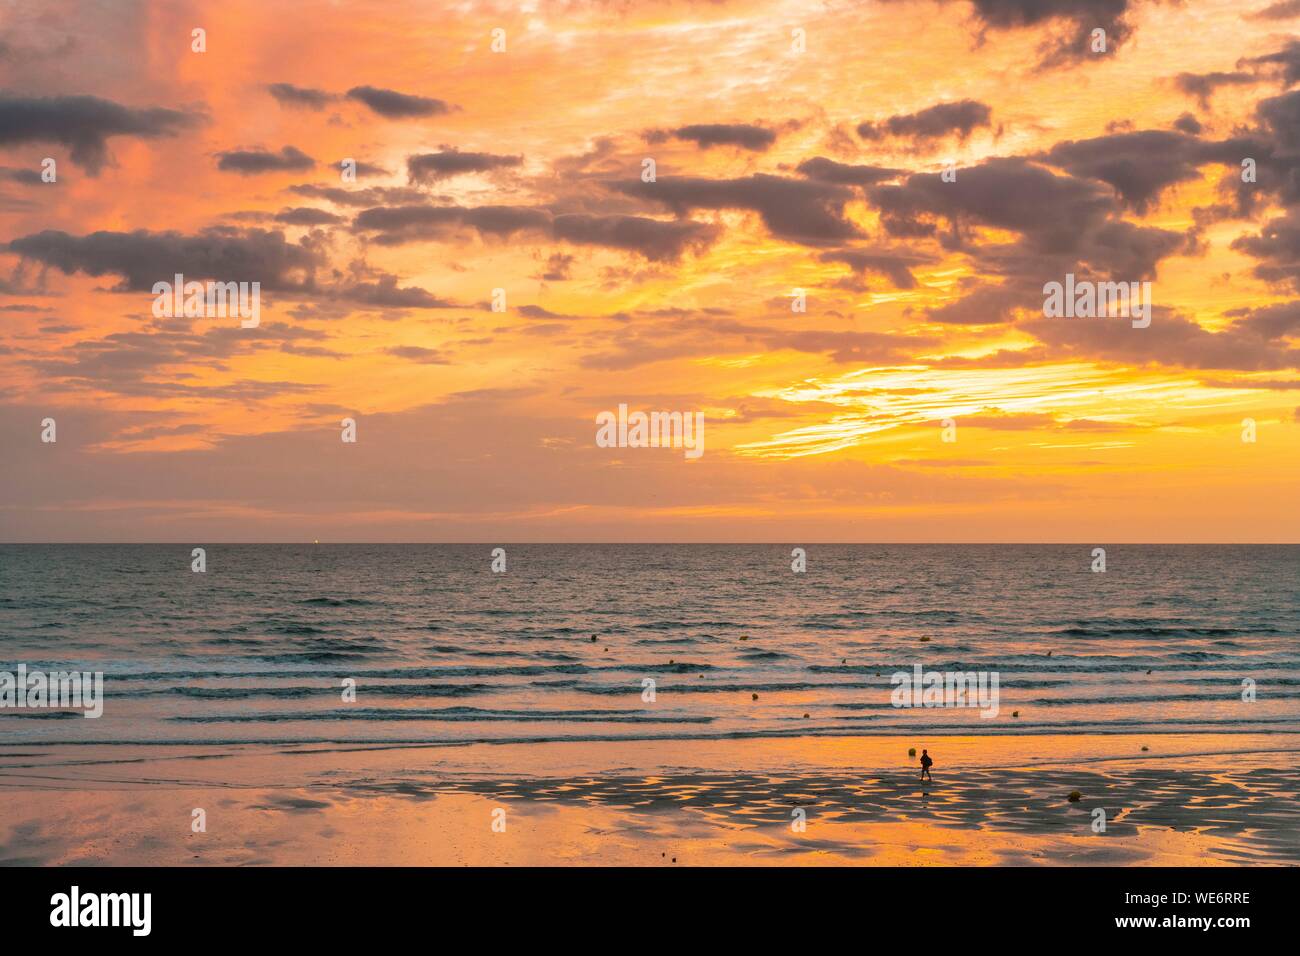 Francia, Somme, Ault, per i turisti e i pescatori in Ault sulla spiaggia la sera, molti escursionisti venuti ad ammirare il tramonto sul mare Foto Stock